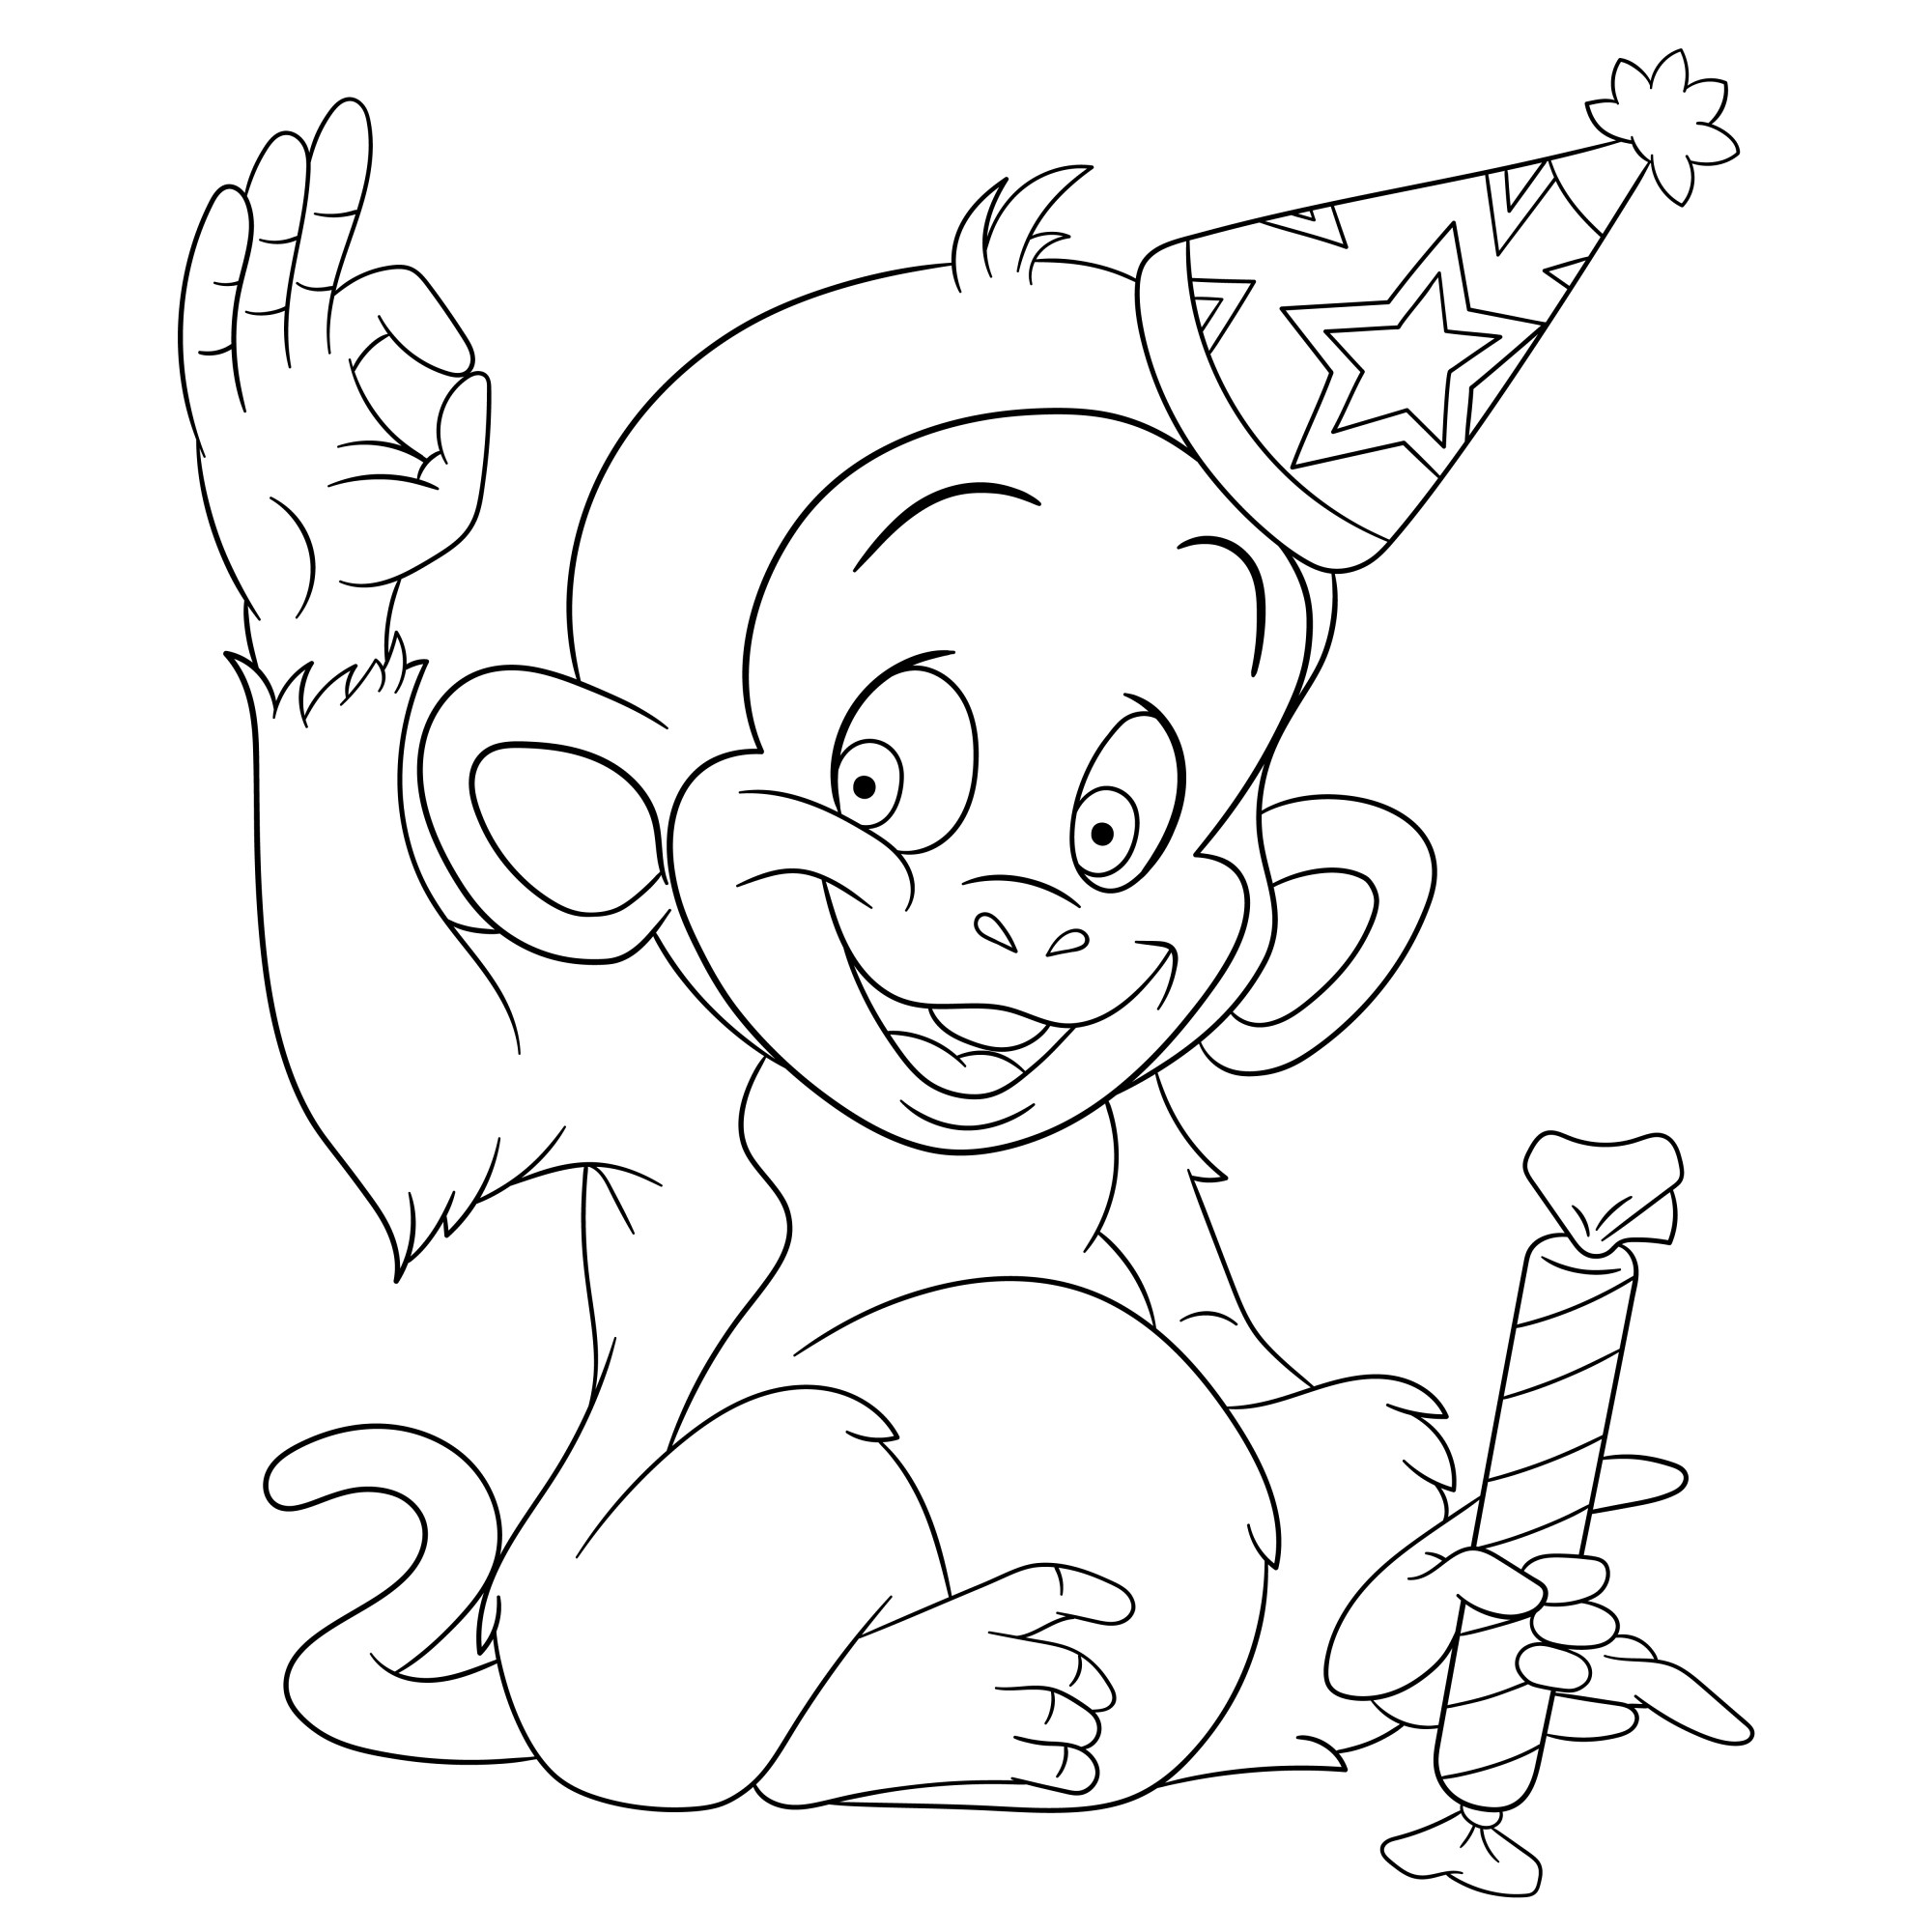 Раскраска для детей: счастливая обезьяна в праздничном колпаке на голове и хлопушкой в руке